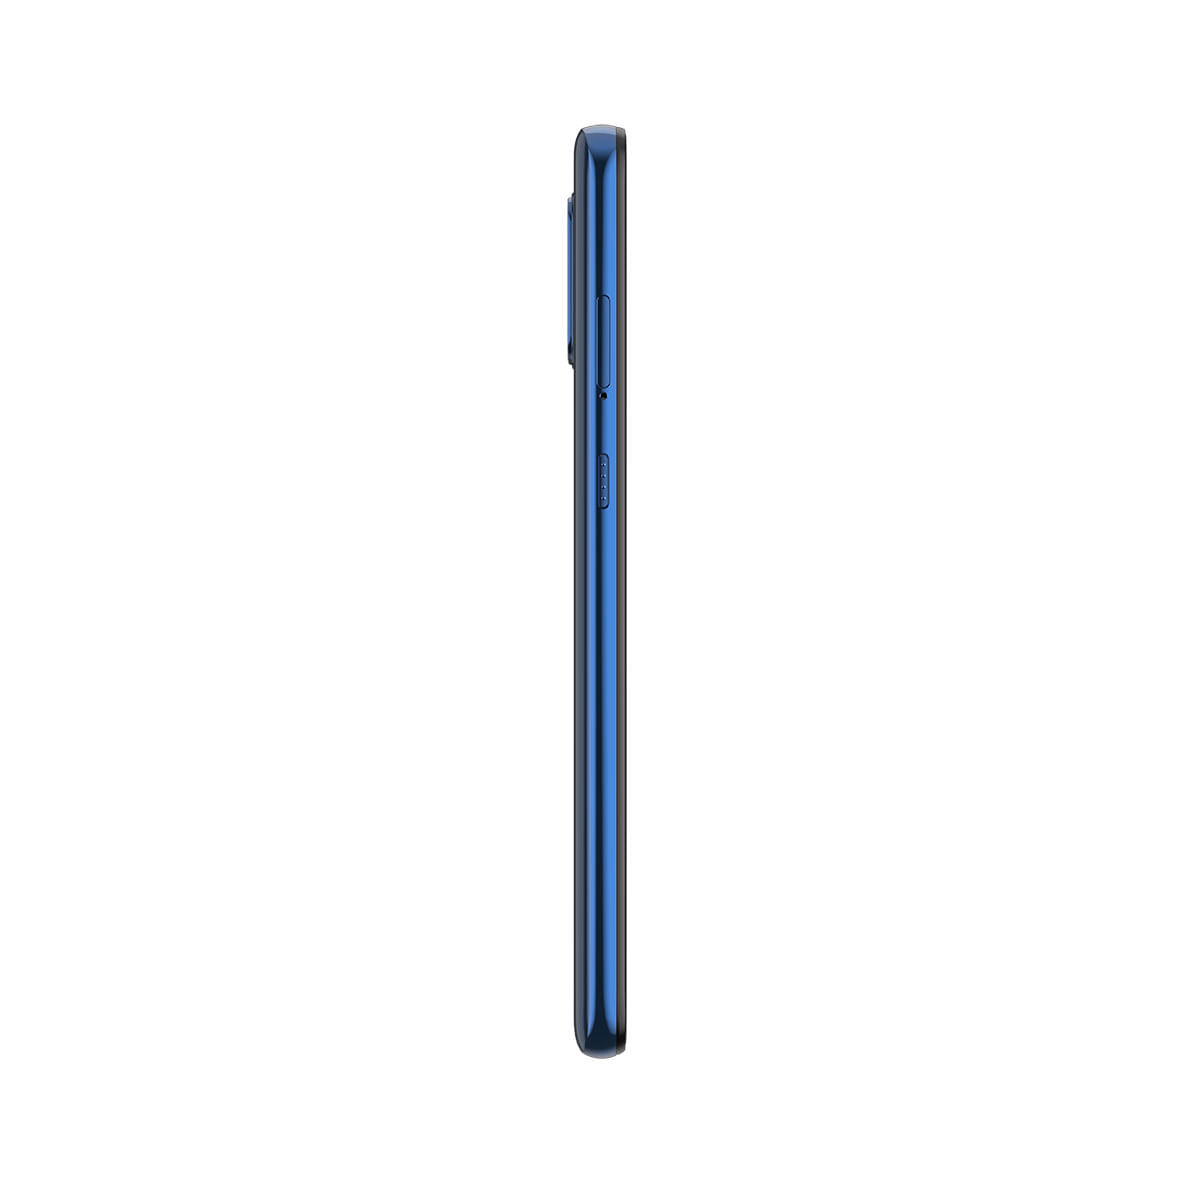 Smartphone Motorola Moto G9 Plus 128GB Azul Índigo 4G Tela 6.8" Câmera Quadrupla 64MP Perfil Esquerdo